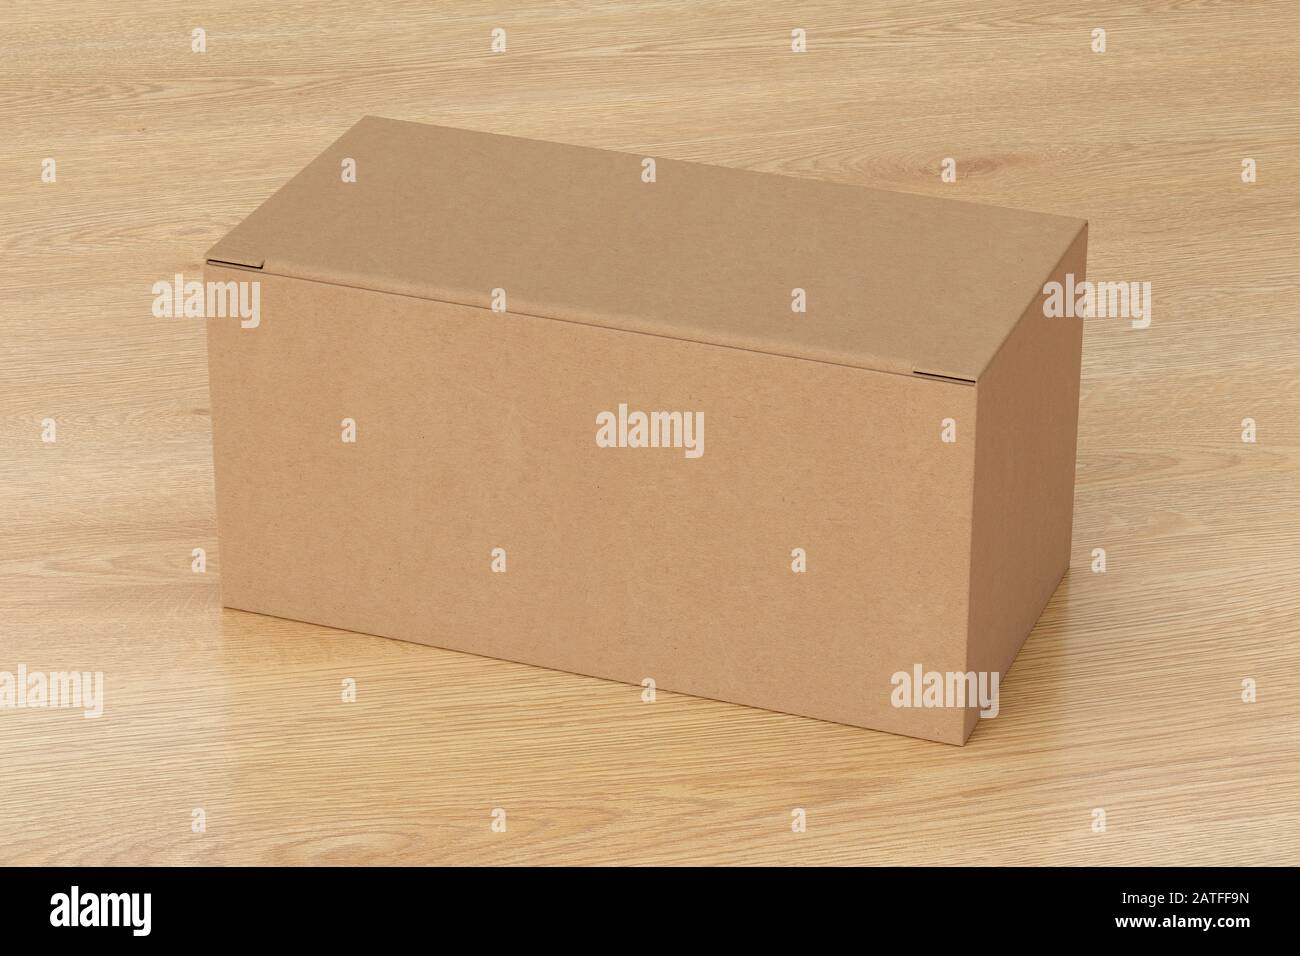 Boîte large en carton vierge avec couvercle rabattable fermé sur fond en bois. Chemin de détourage autour de la maquette de boîte Banque D'Images